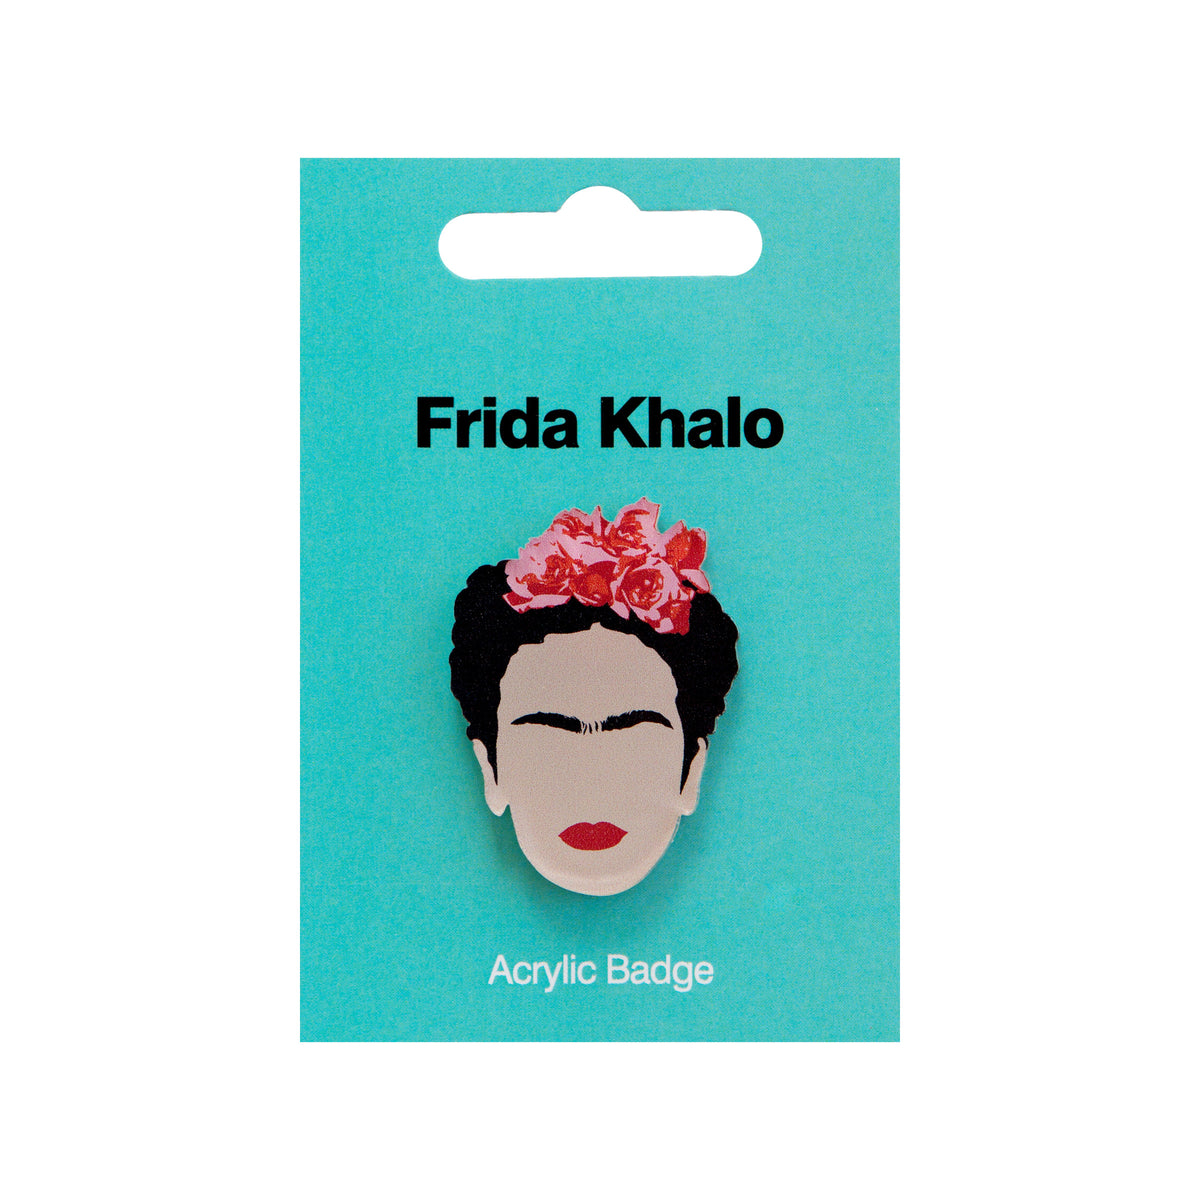 Frida Kahlo Acrylic Badge